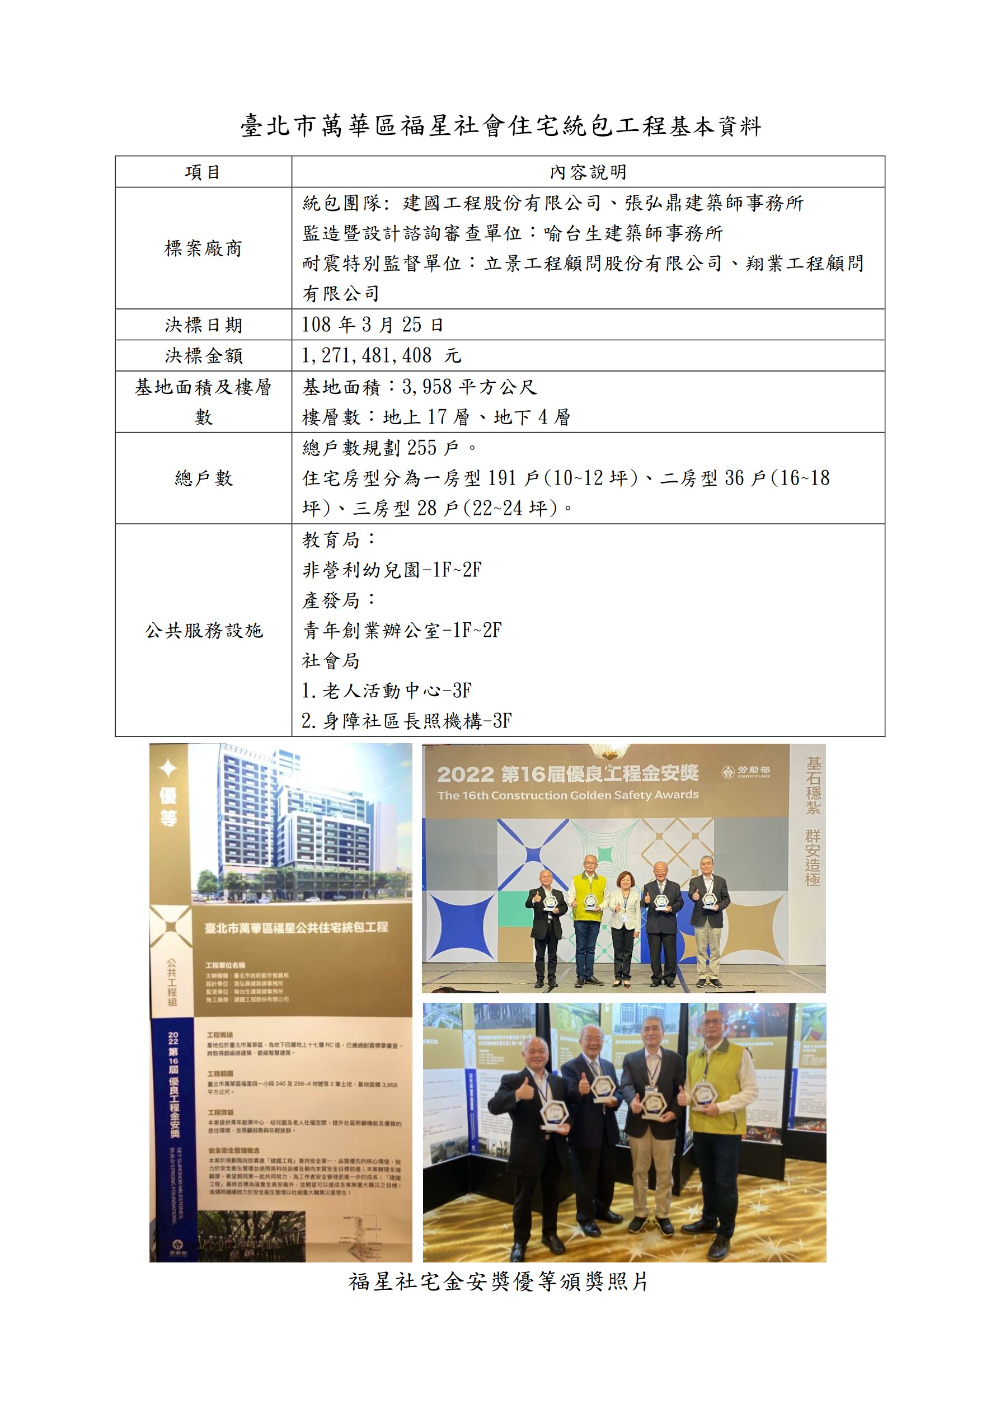 臺北市萬華區福星社會住宅統包工程基本資料